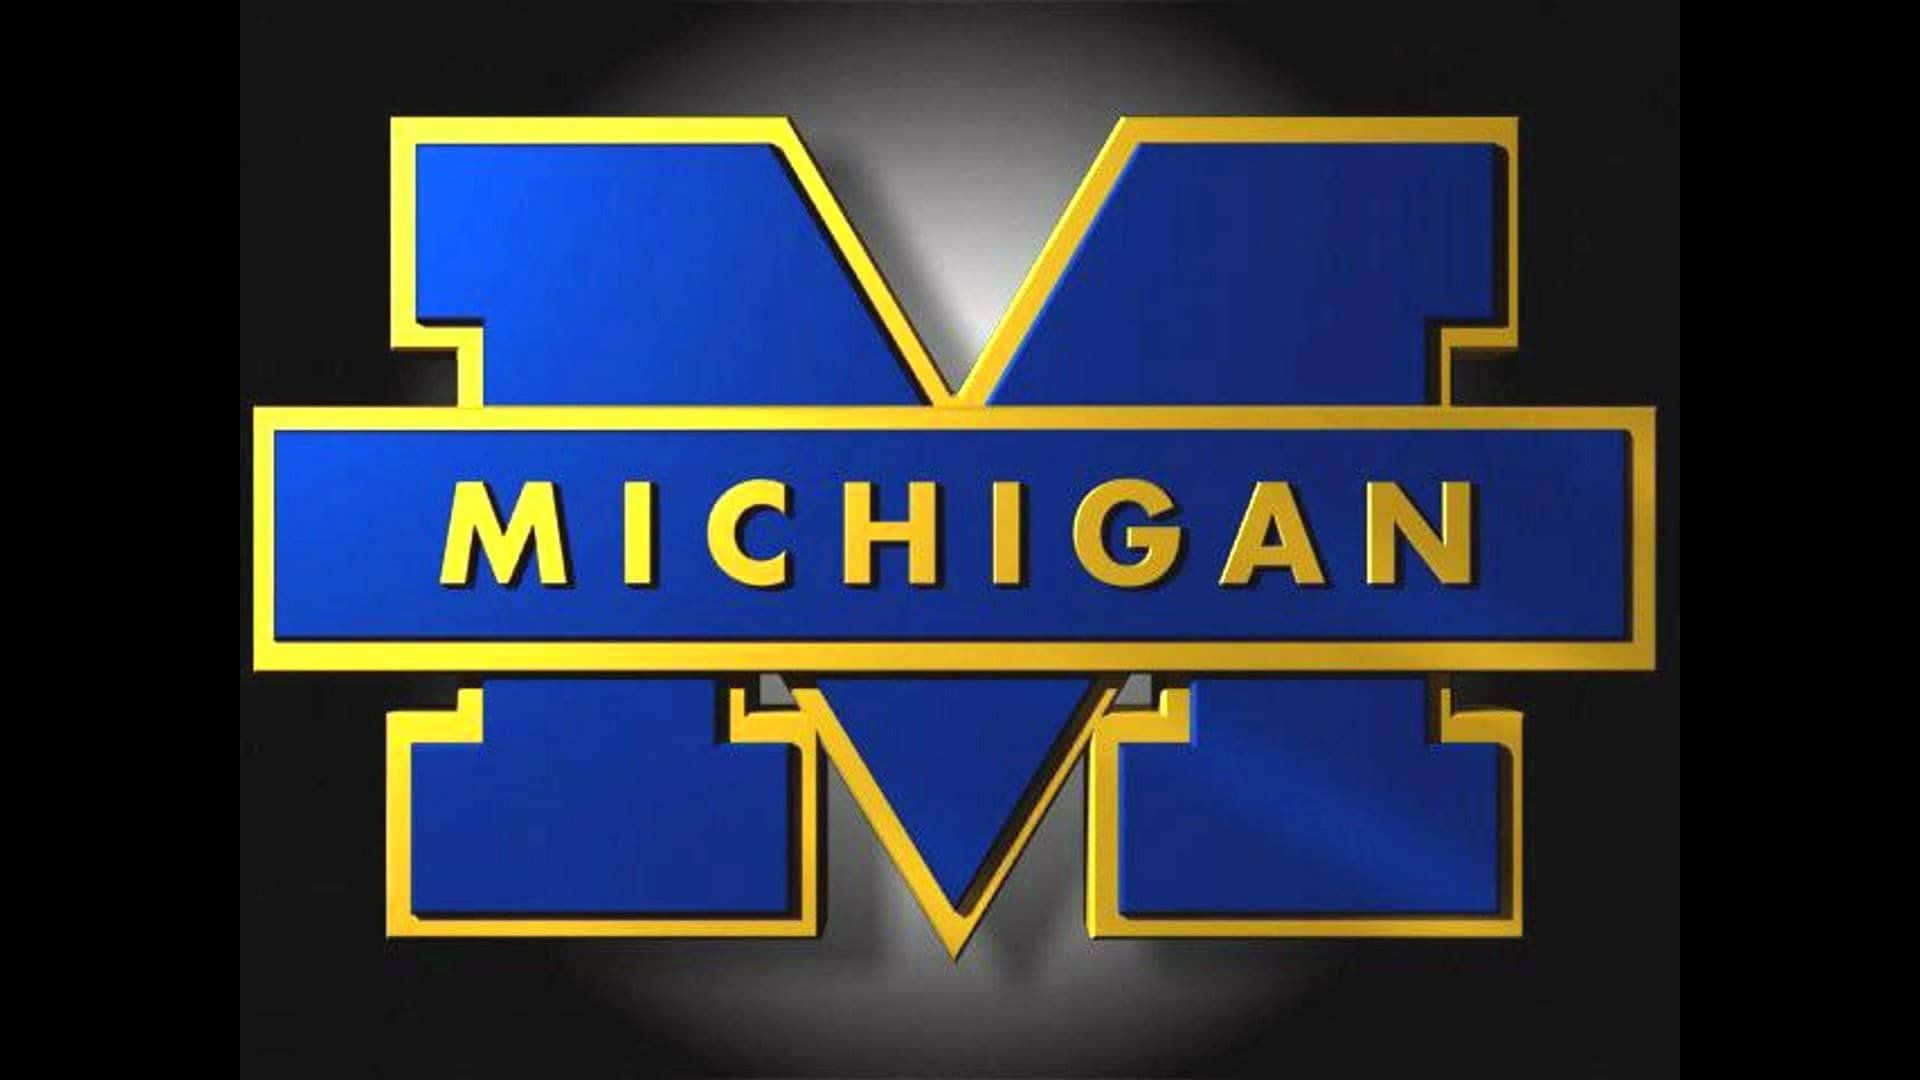 Logotipode Michigan Sobre Un Fondo Negro. Fondo de pantalla